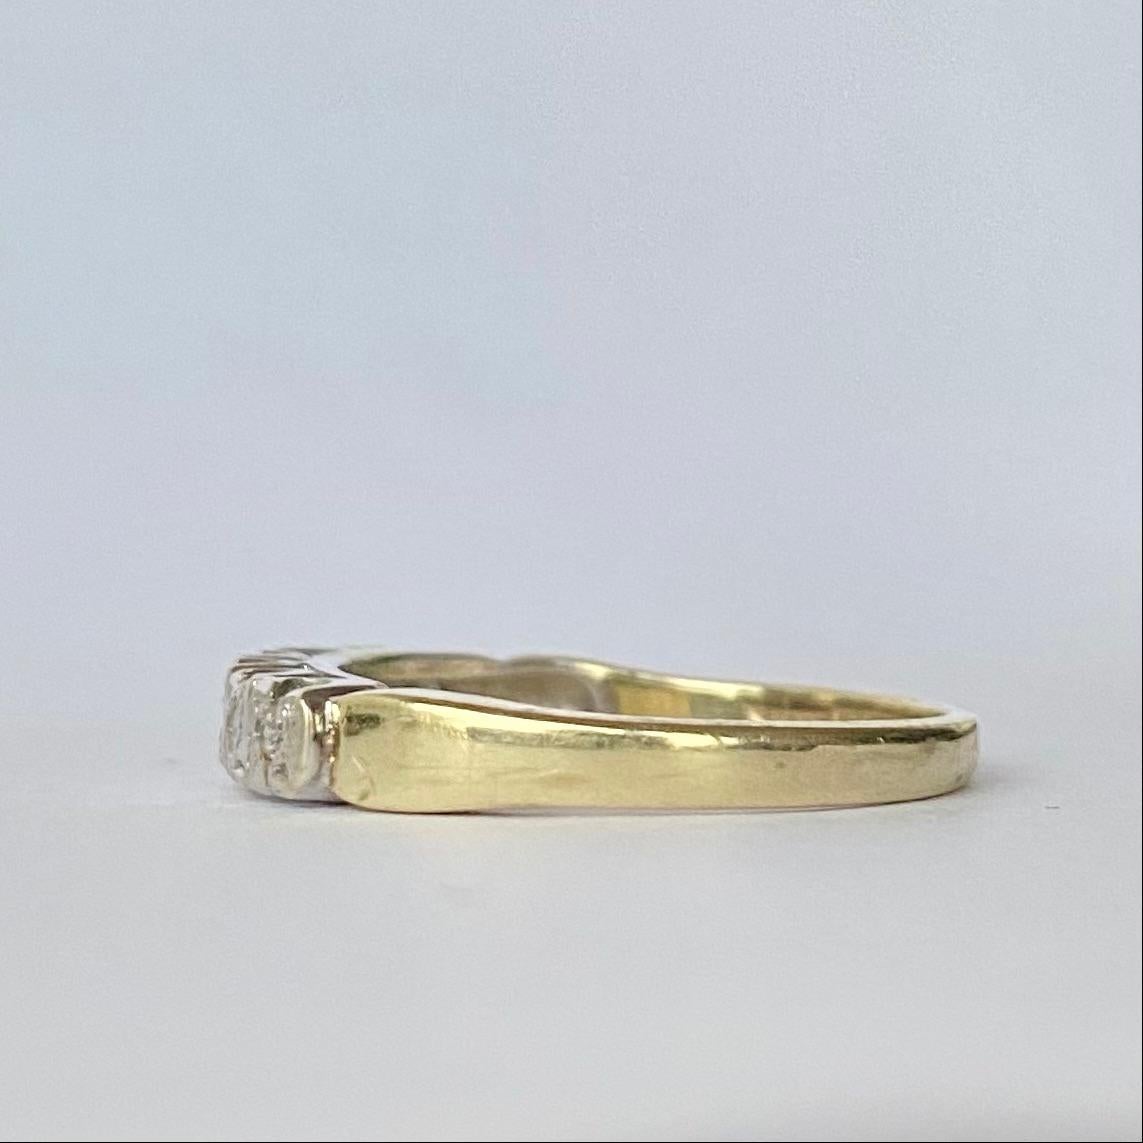 Auf diesem schlichten Band aus 18 Karat Gold sitzen sieben funkelnde Diamanten mit einem Gesamtgewicht von 20 Pence. Hergestellt in Birmingham, England. 

Ring Größe: M oder 6 1/4 
Breite des Bandes: 3,5 mm

Gewicht: 2,9 g